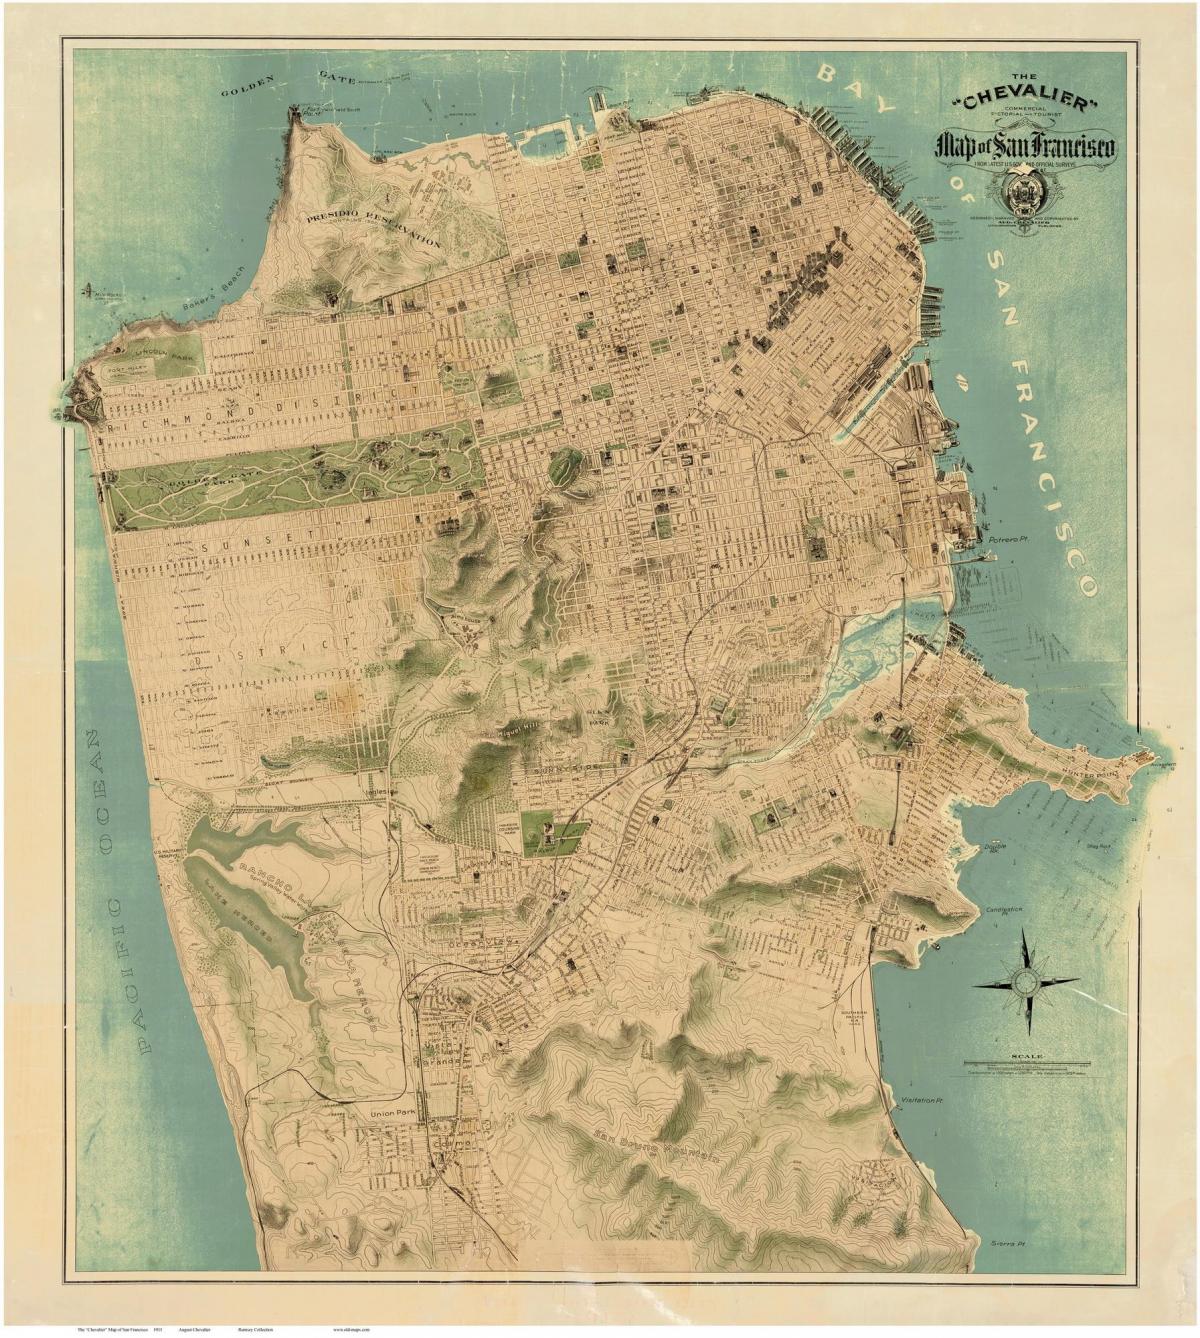 Mapa ng old San Francisco 